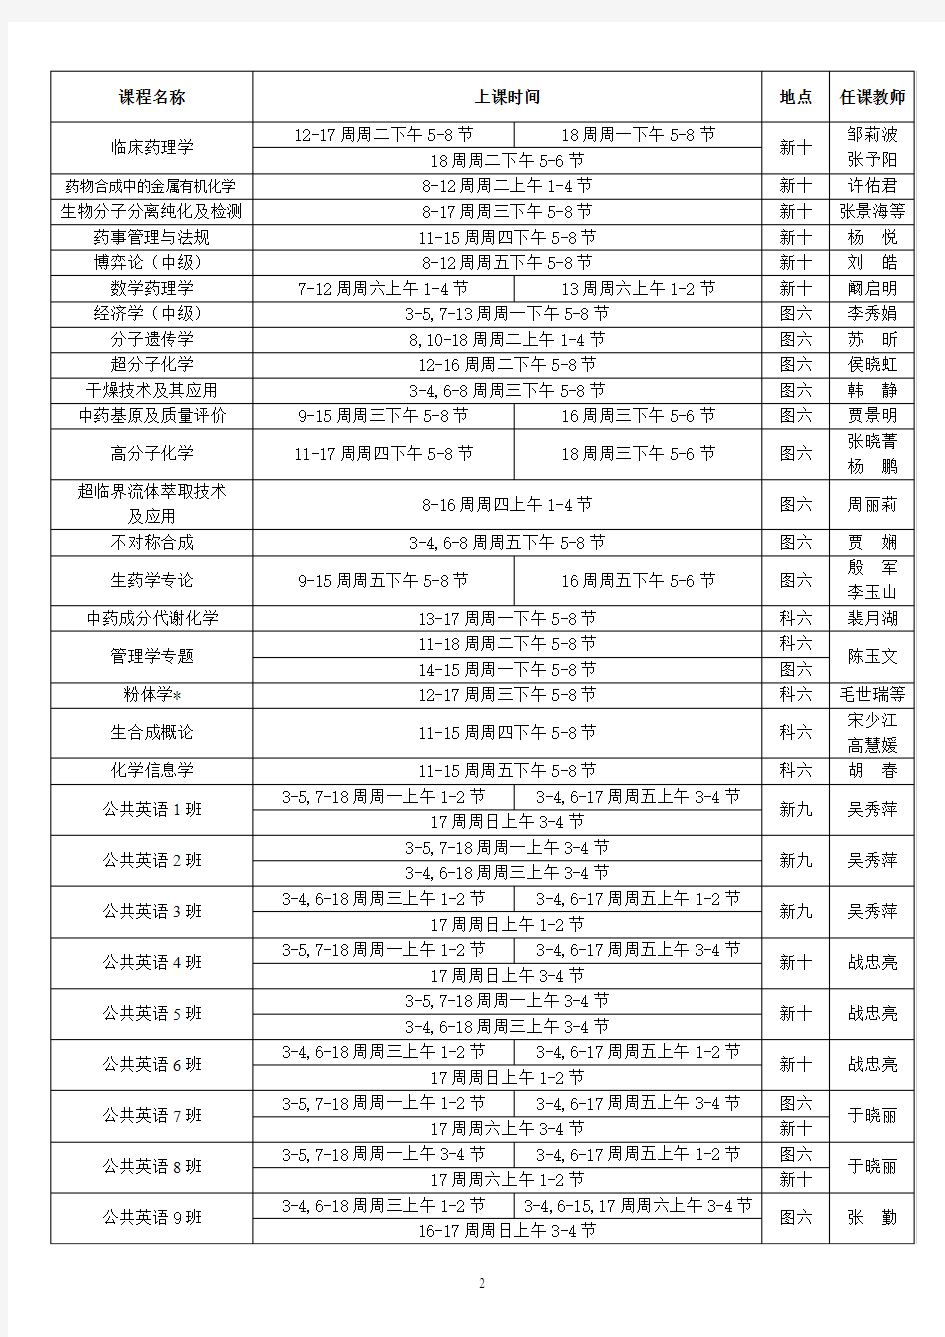 沈阳药科大学2014级博士硕士研究生第一学期课程表